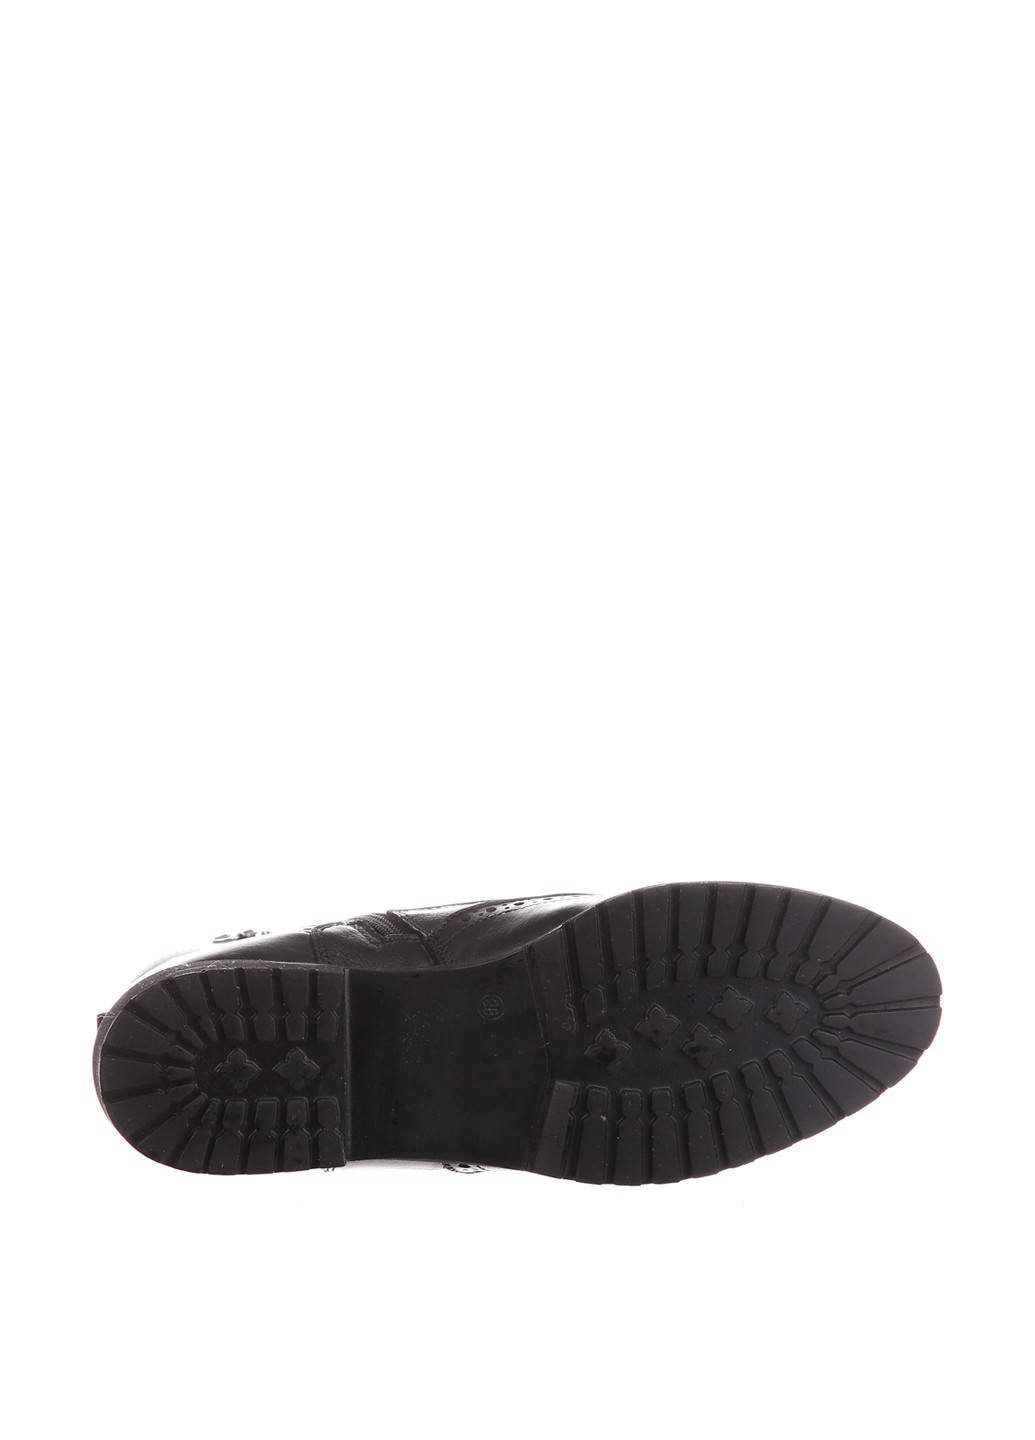 Зимние ботинки Polaris со шнуровкой, с перфорацией